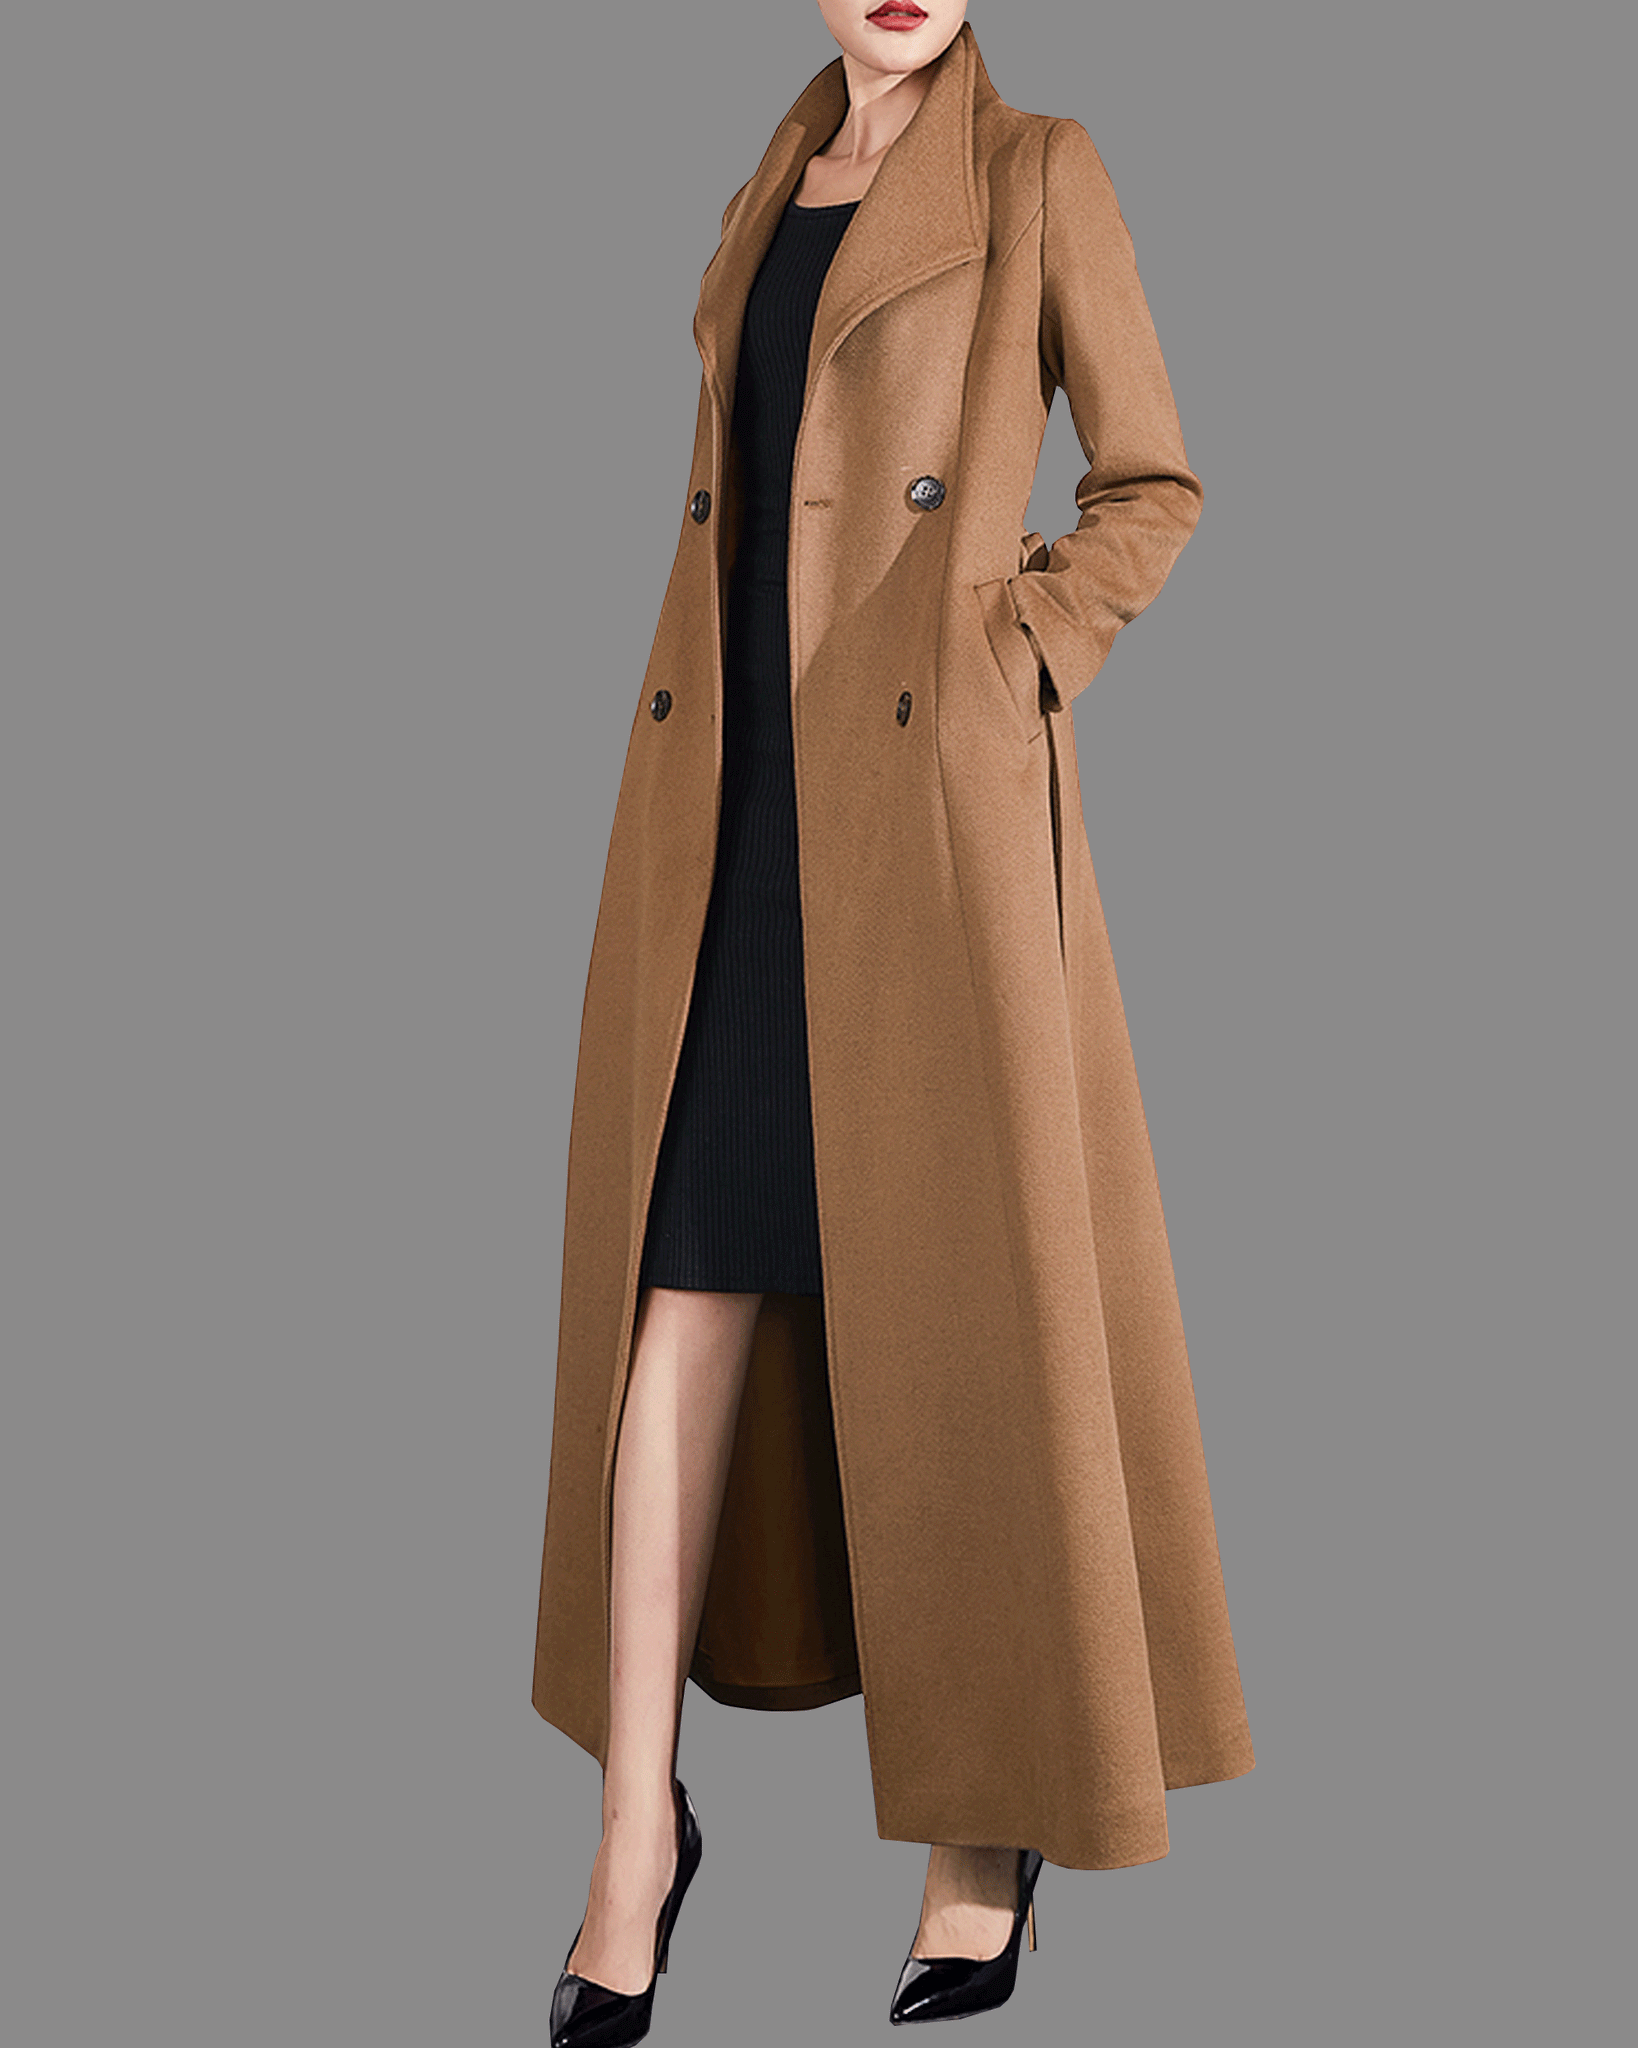 Wool Coat Women, Long Wool Coat, Double Breasted Wool Trench Coat